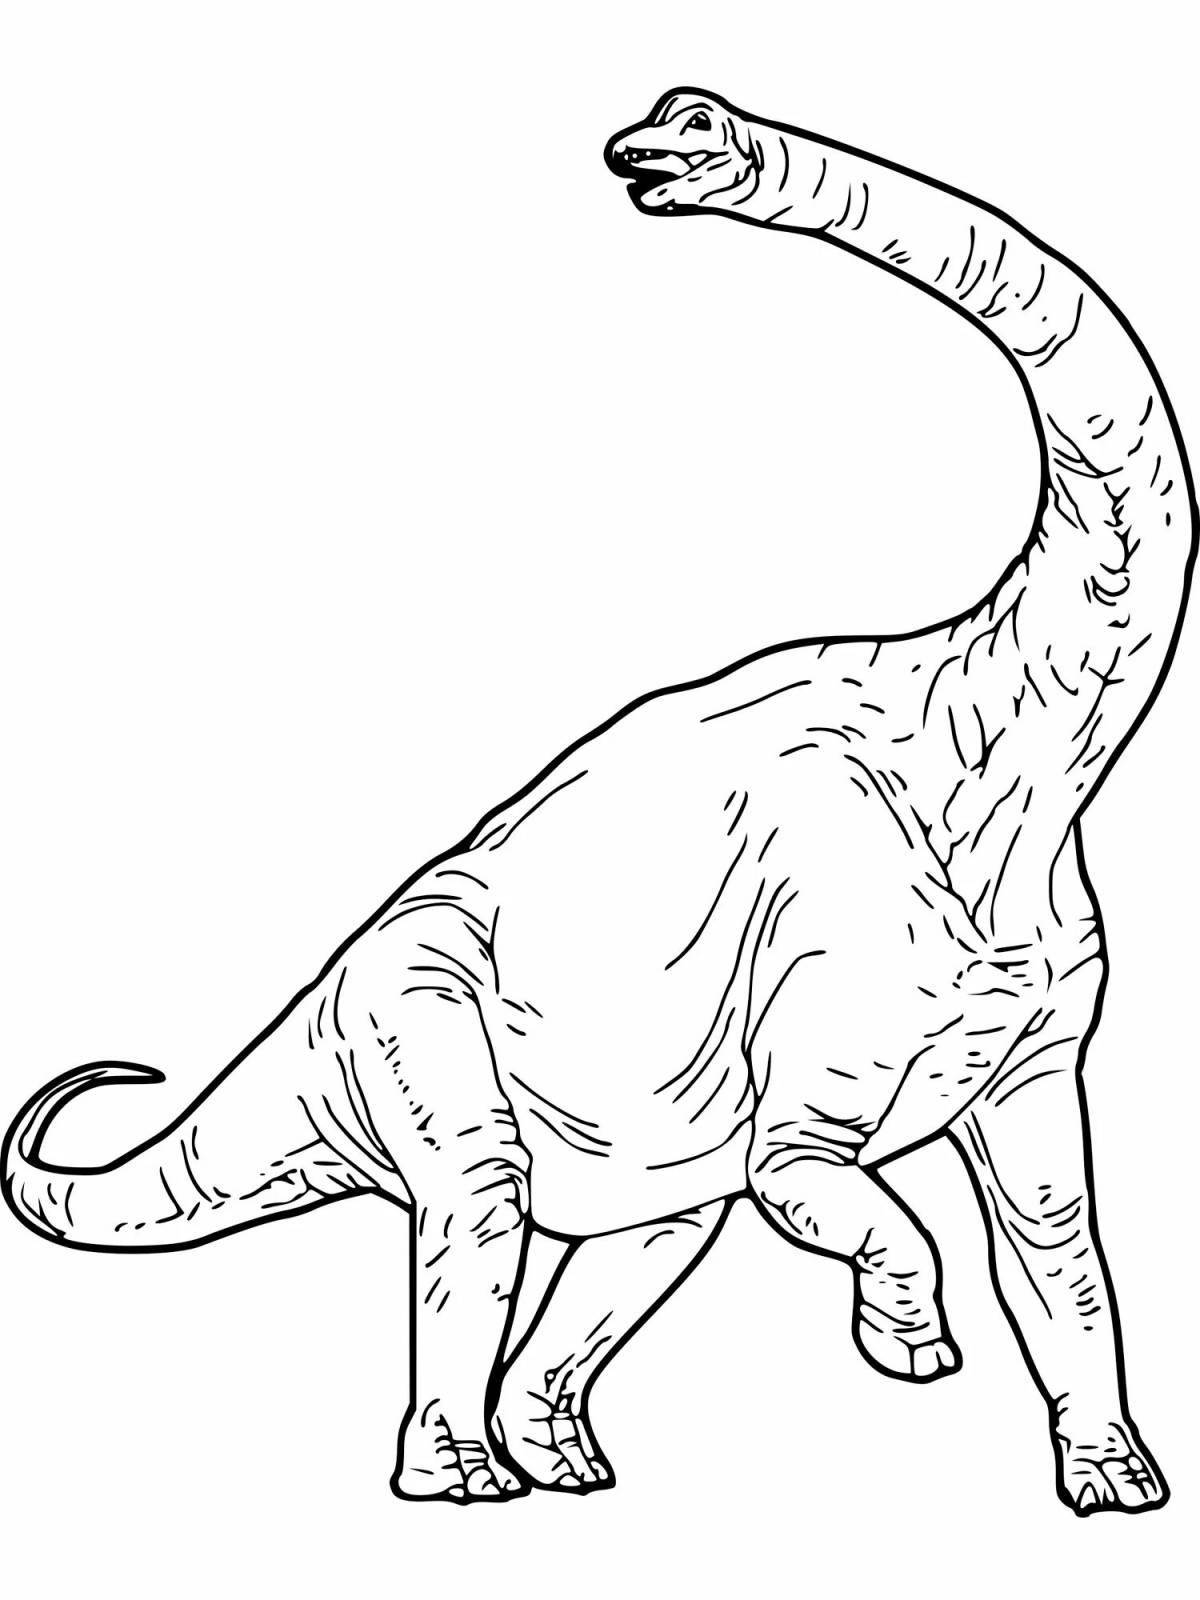 Анимированная страница раскраски травоядных динозавров